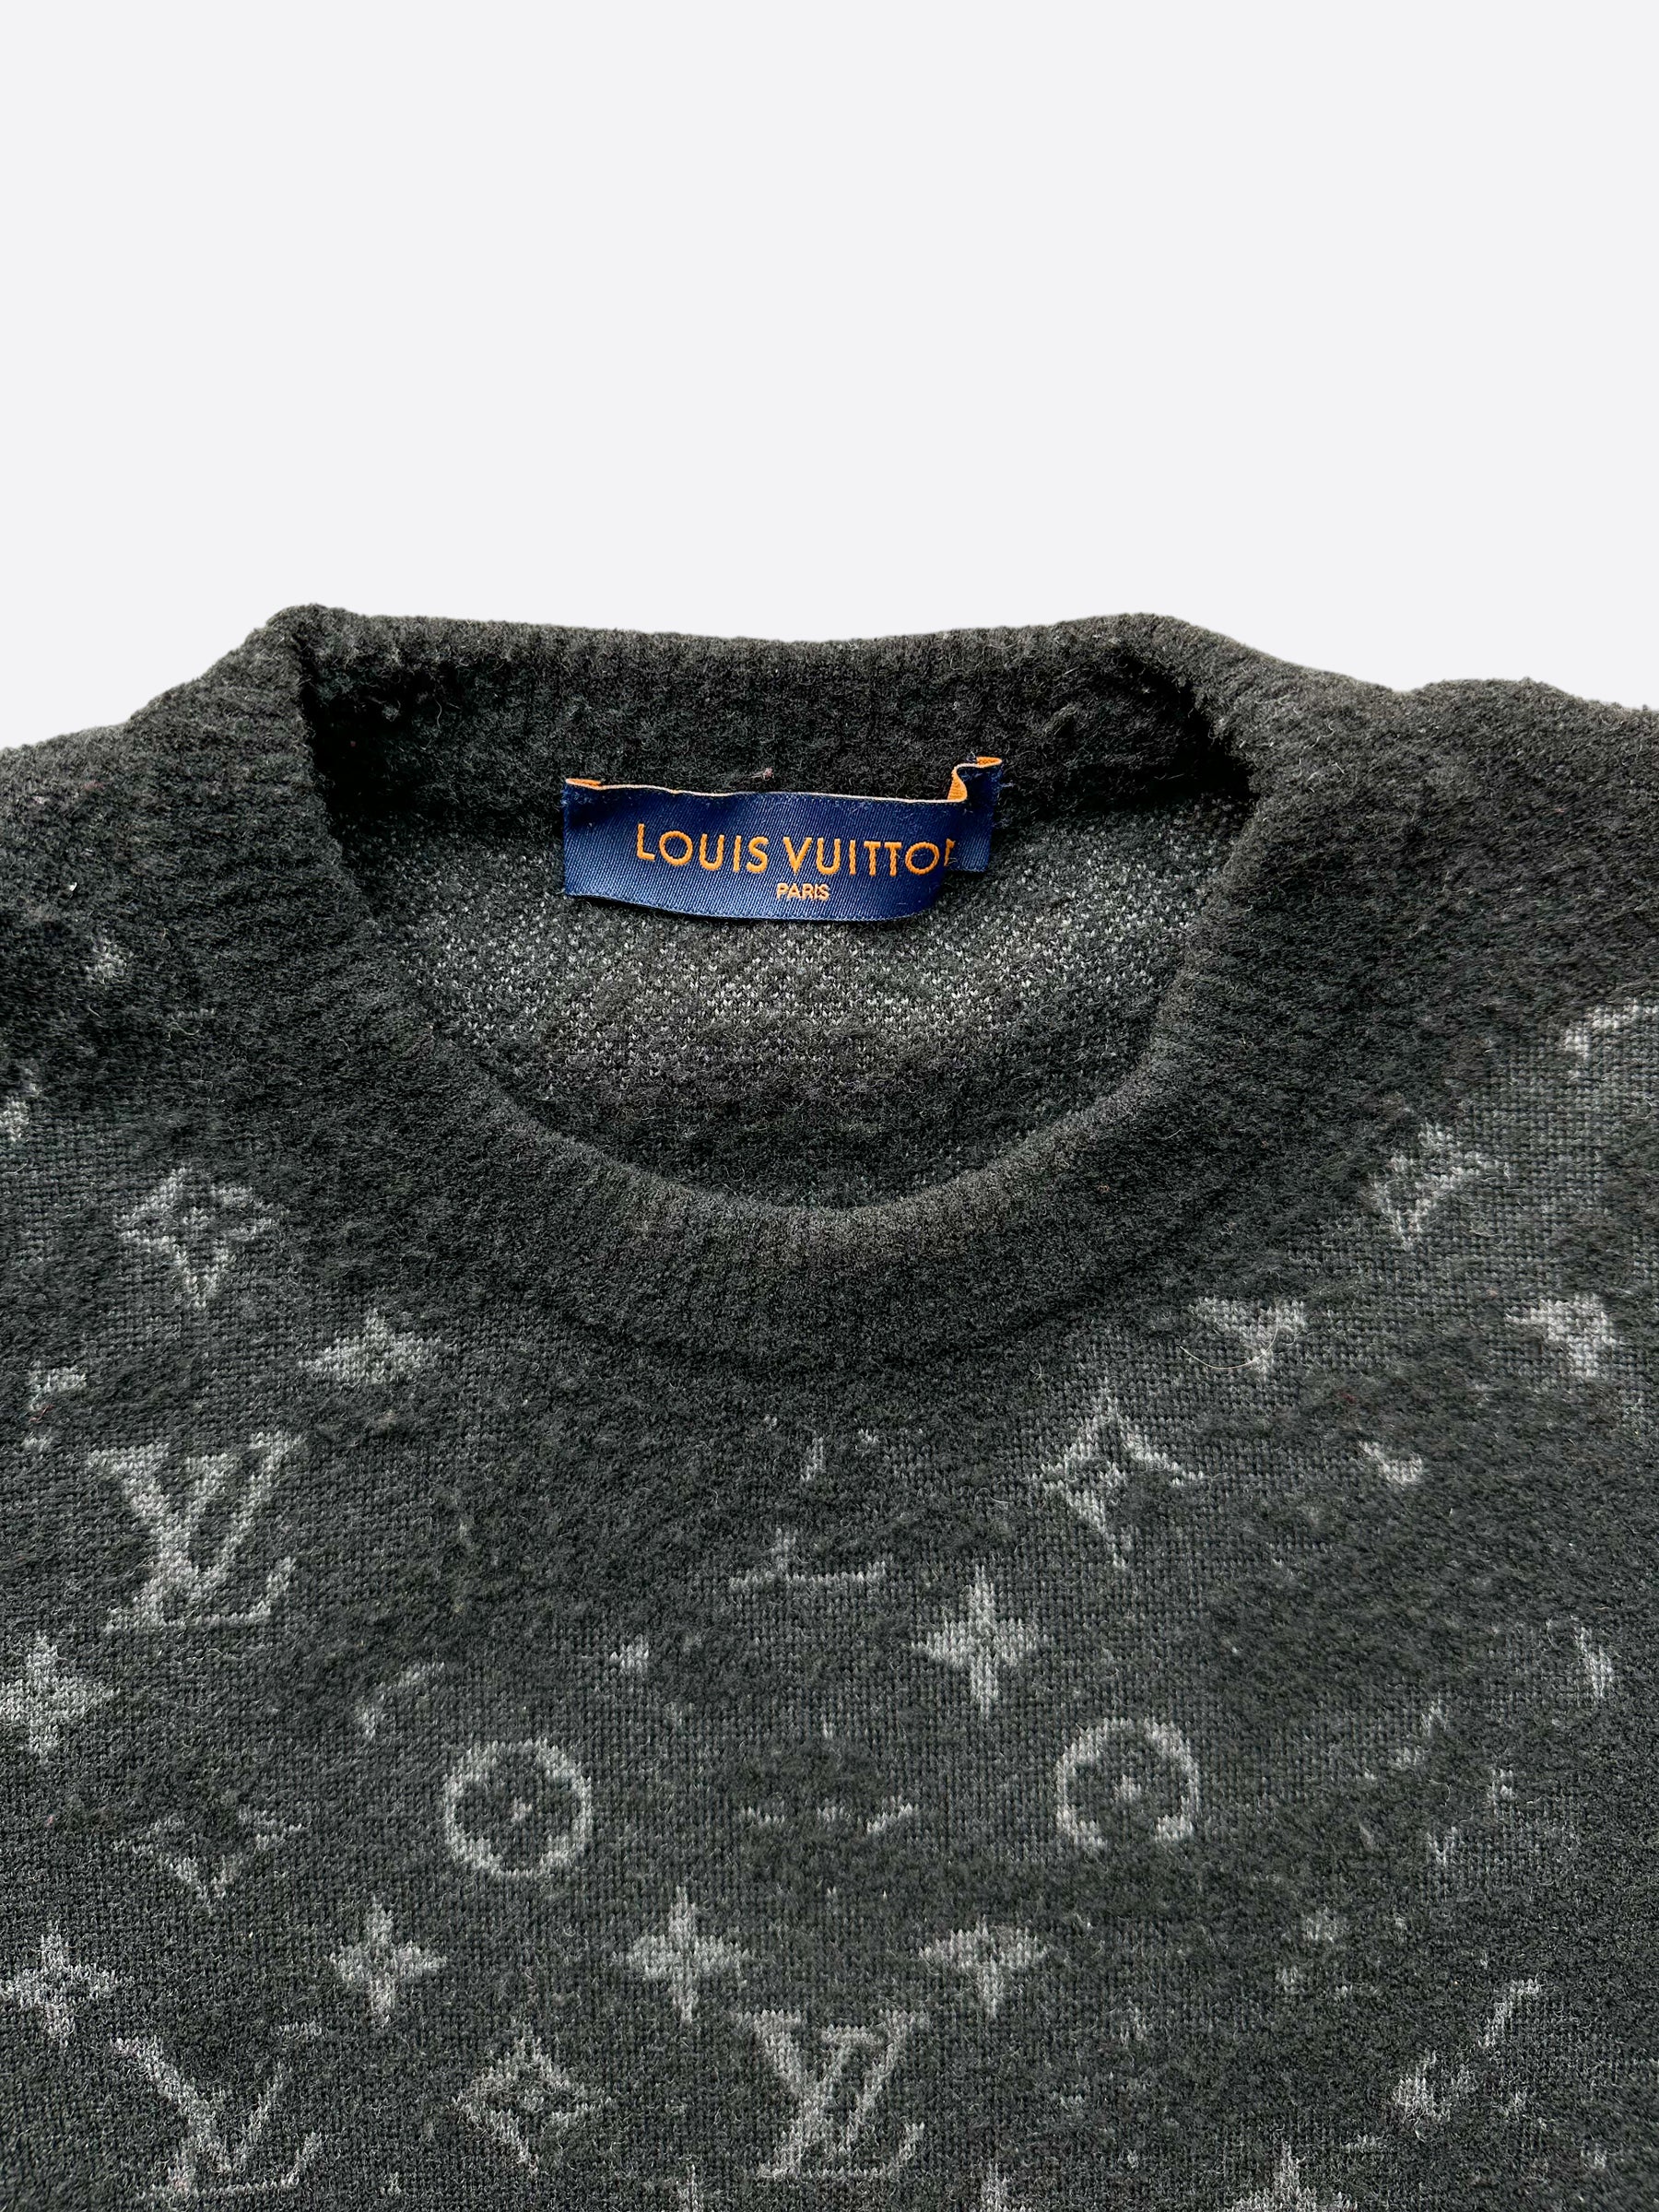 Louis Vuitton Black Knit Crew Neck Sweater S Louis Vuitton